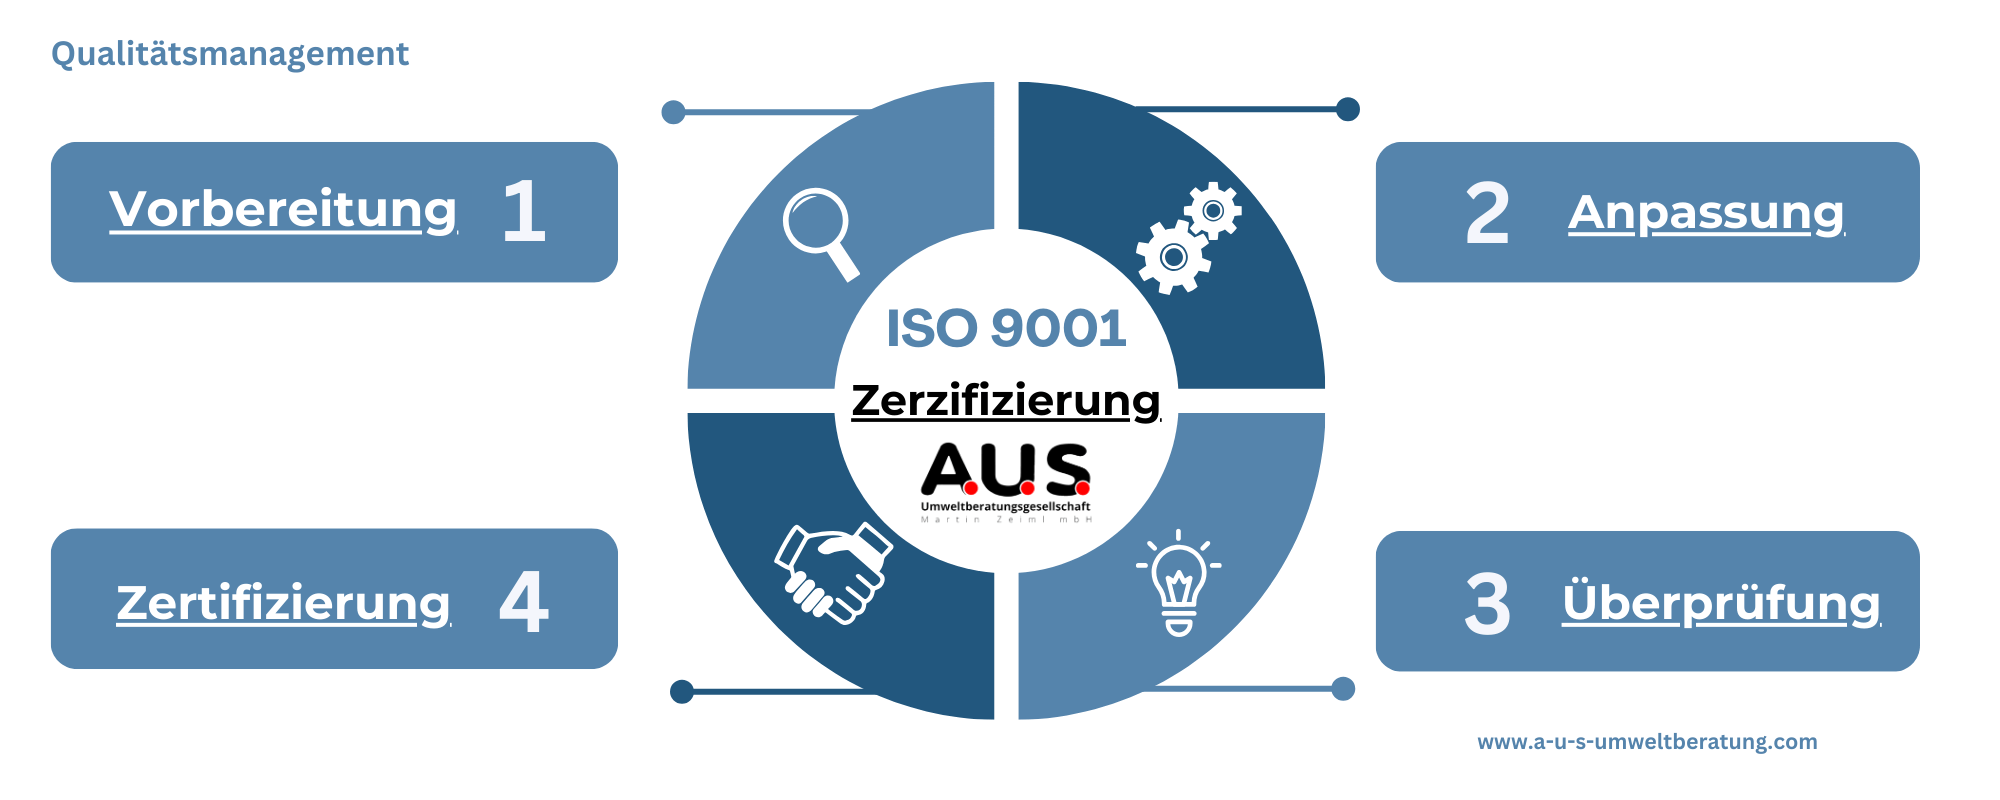 A.U.S. ISO 9001 Zerifizierung